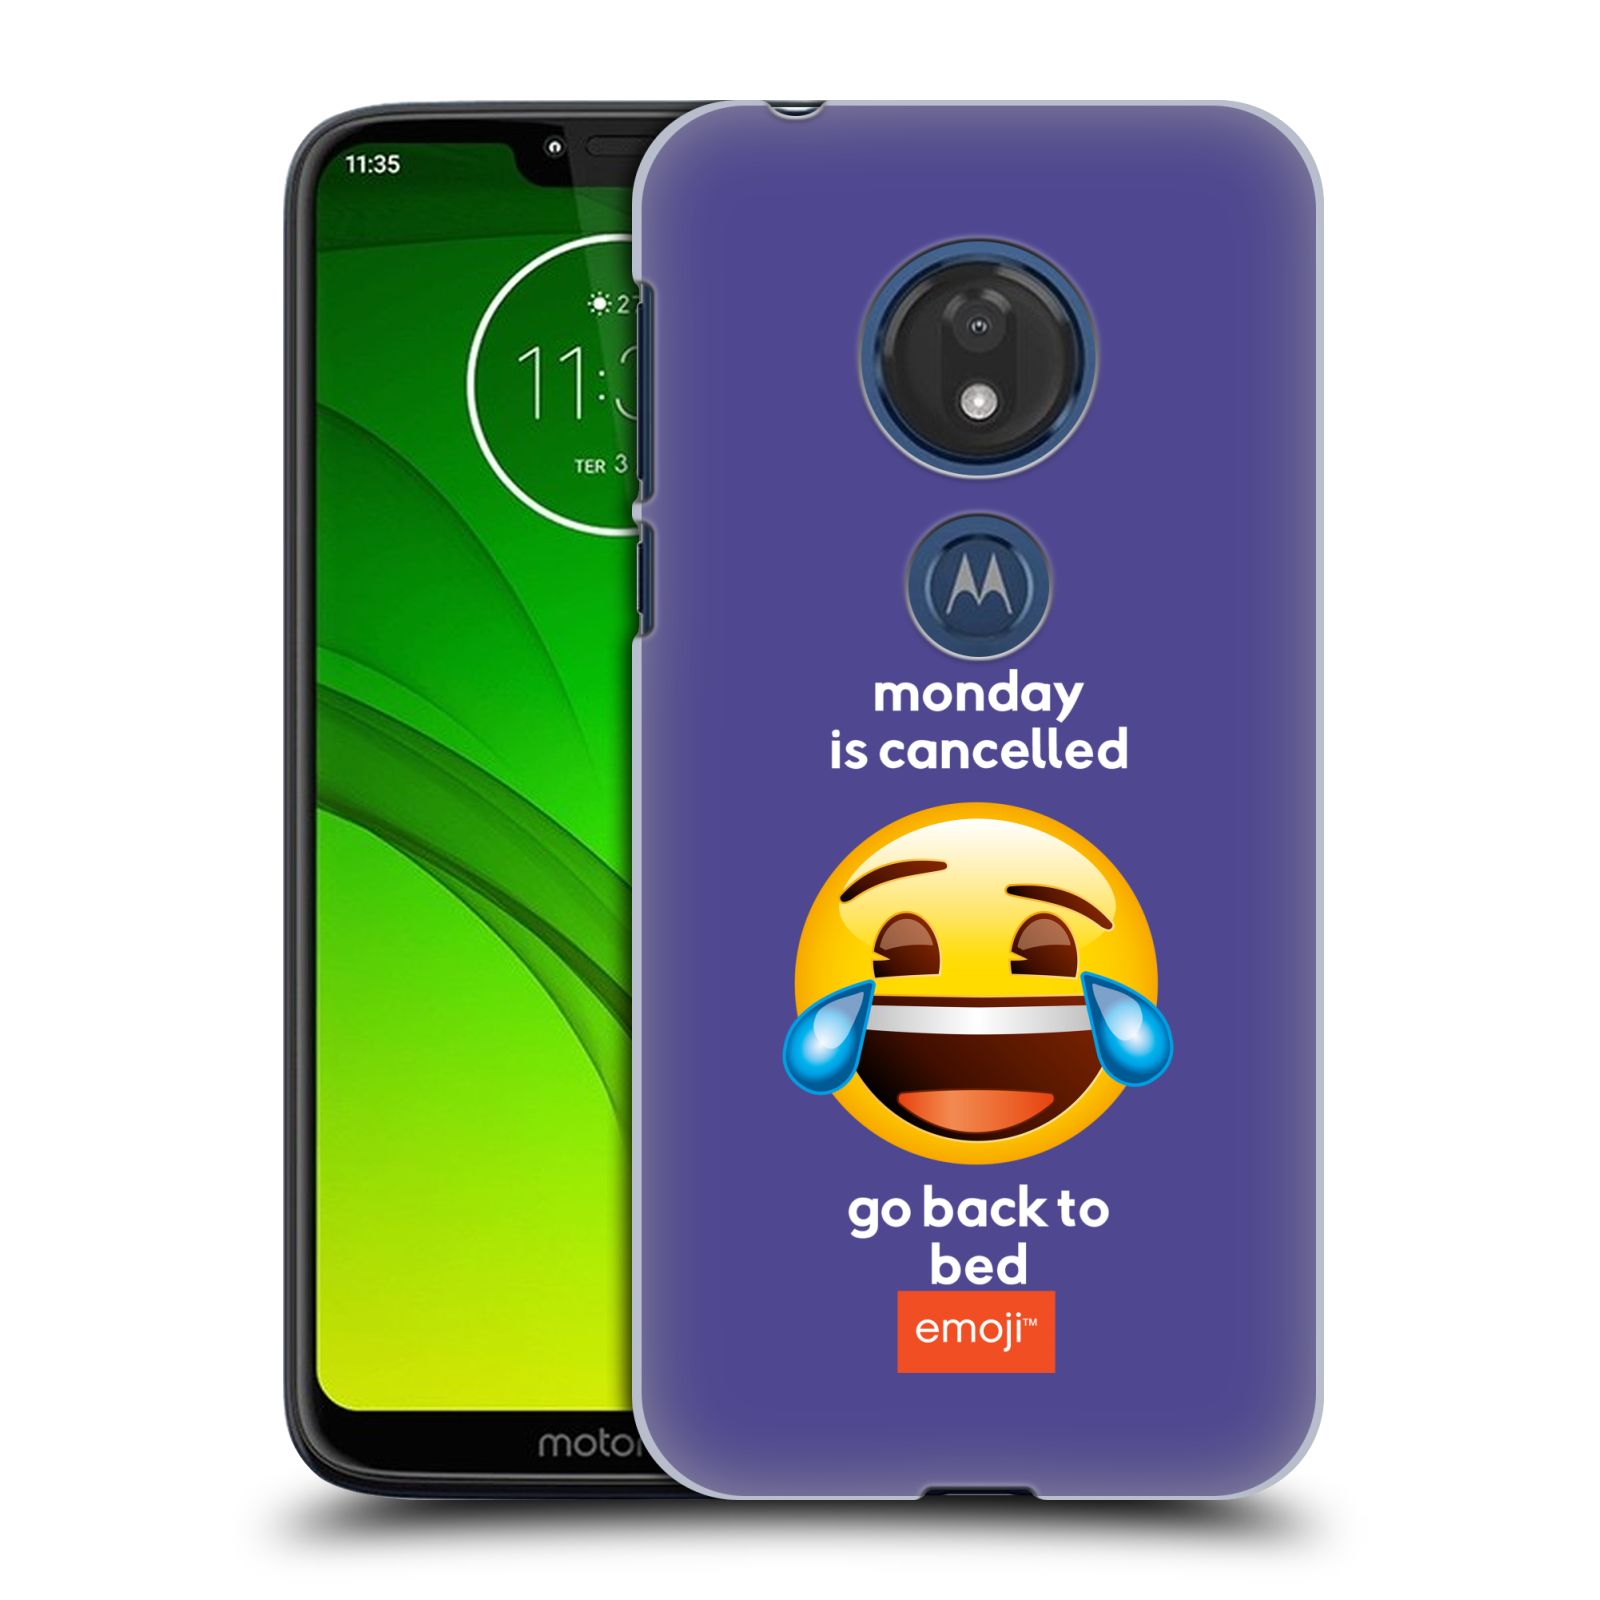 Pouzdro na mobil Motorola Moto G7 Play - HEAD CASE - Emoji smějící se smajlík pondělí